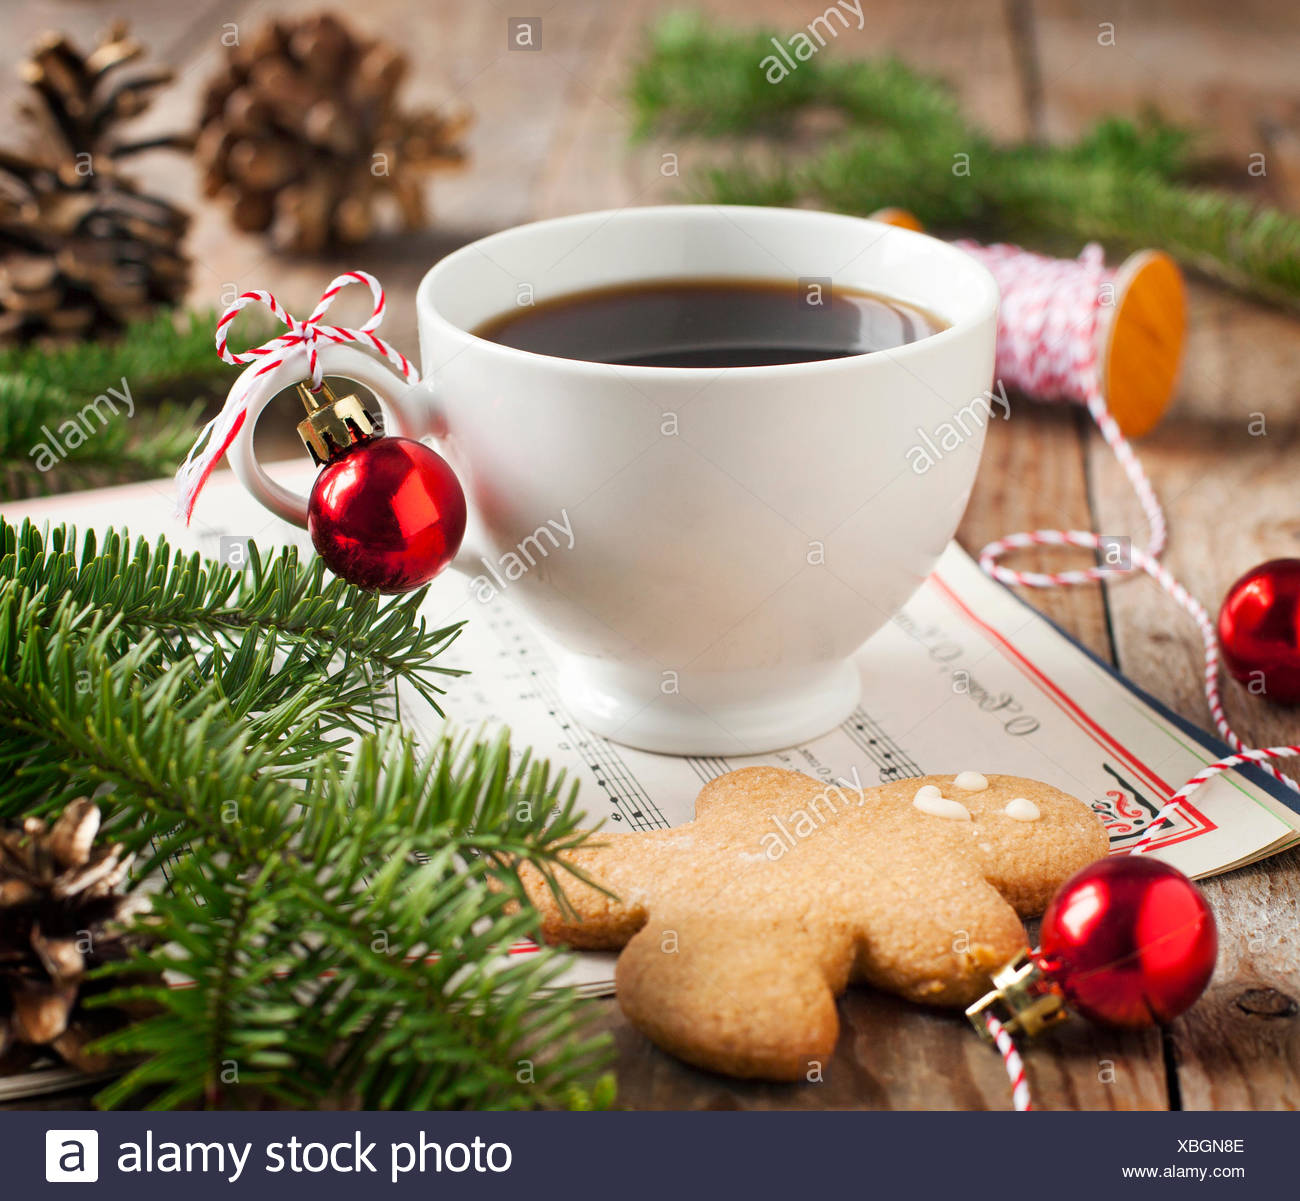 Tazze Di Natale.Tazza Di Caffe E Gingerbread Cookie Con Decorazioni Di Natale Foto Stock Alamy